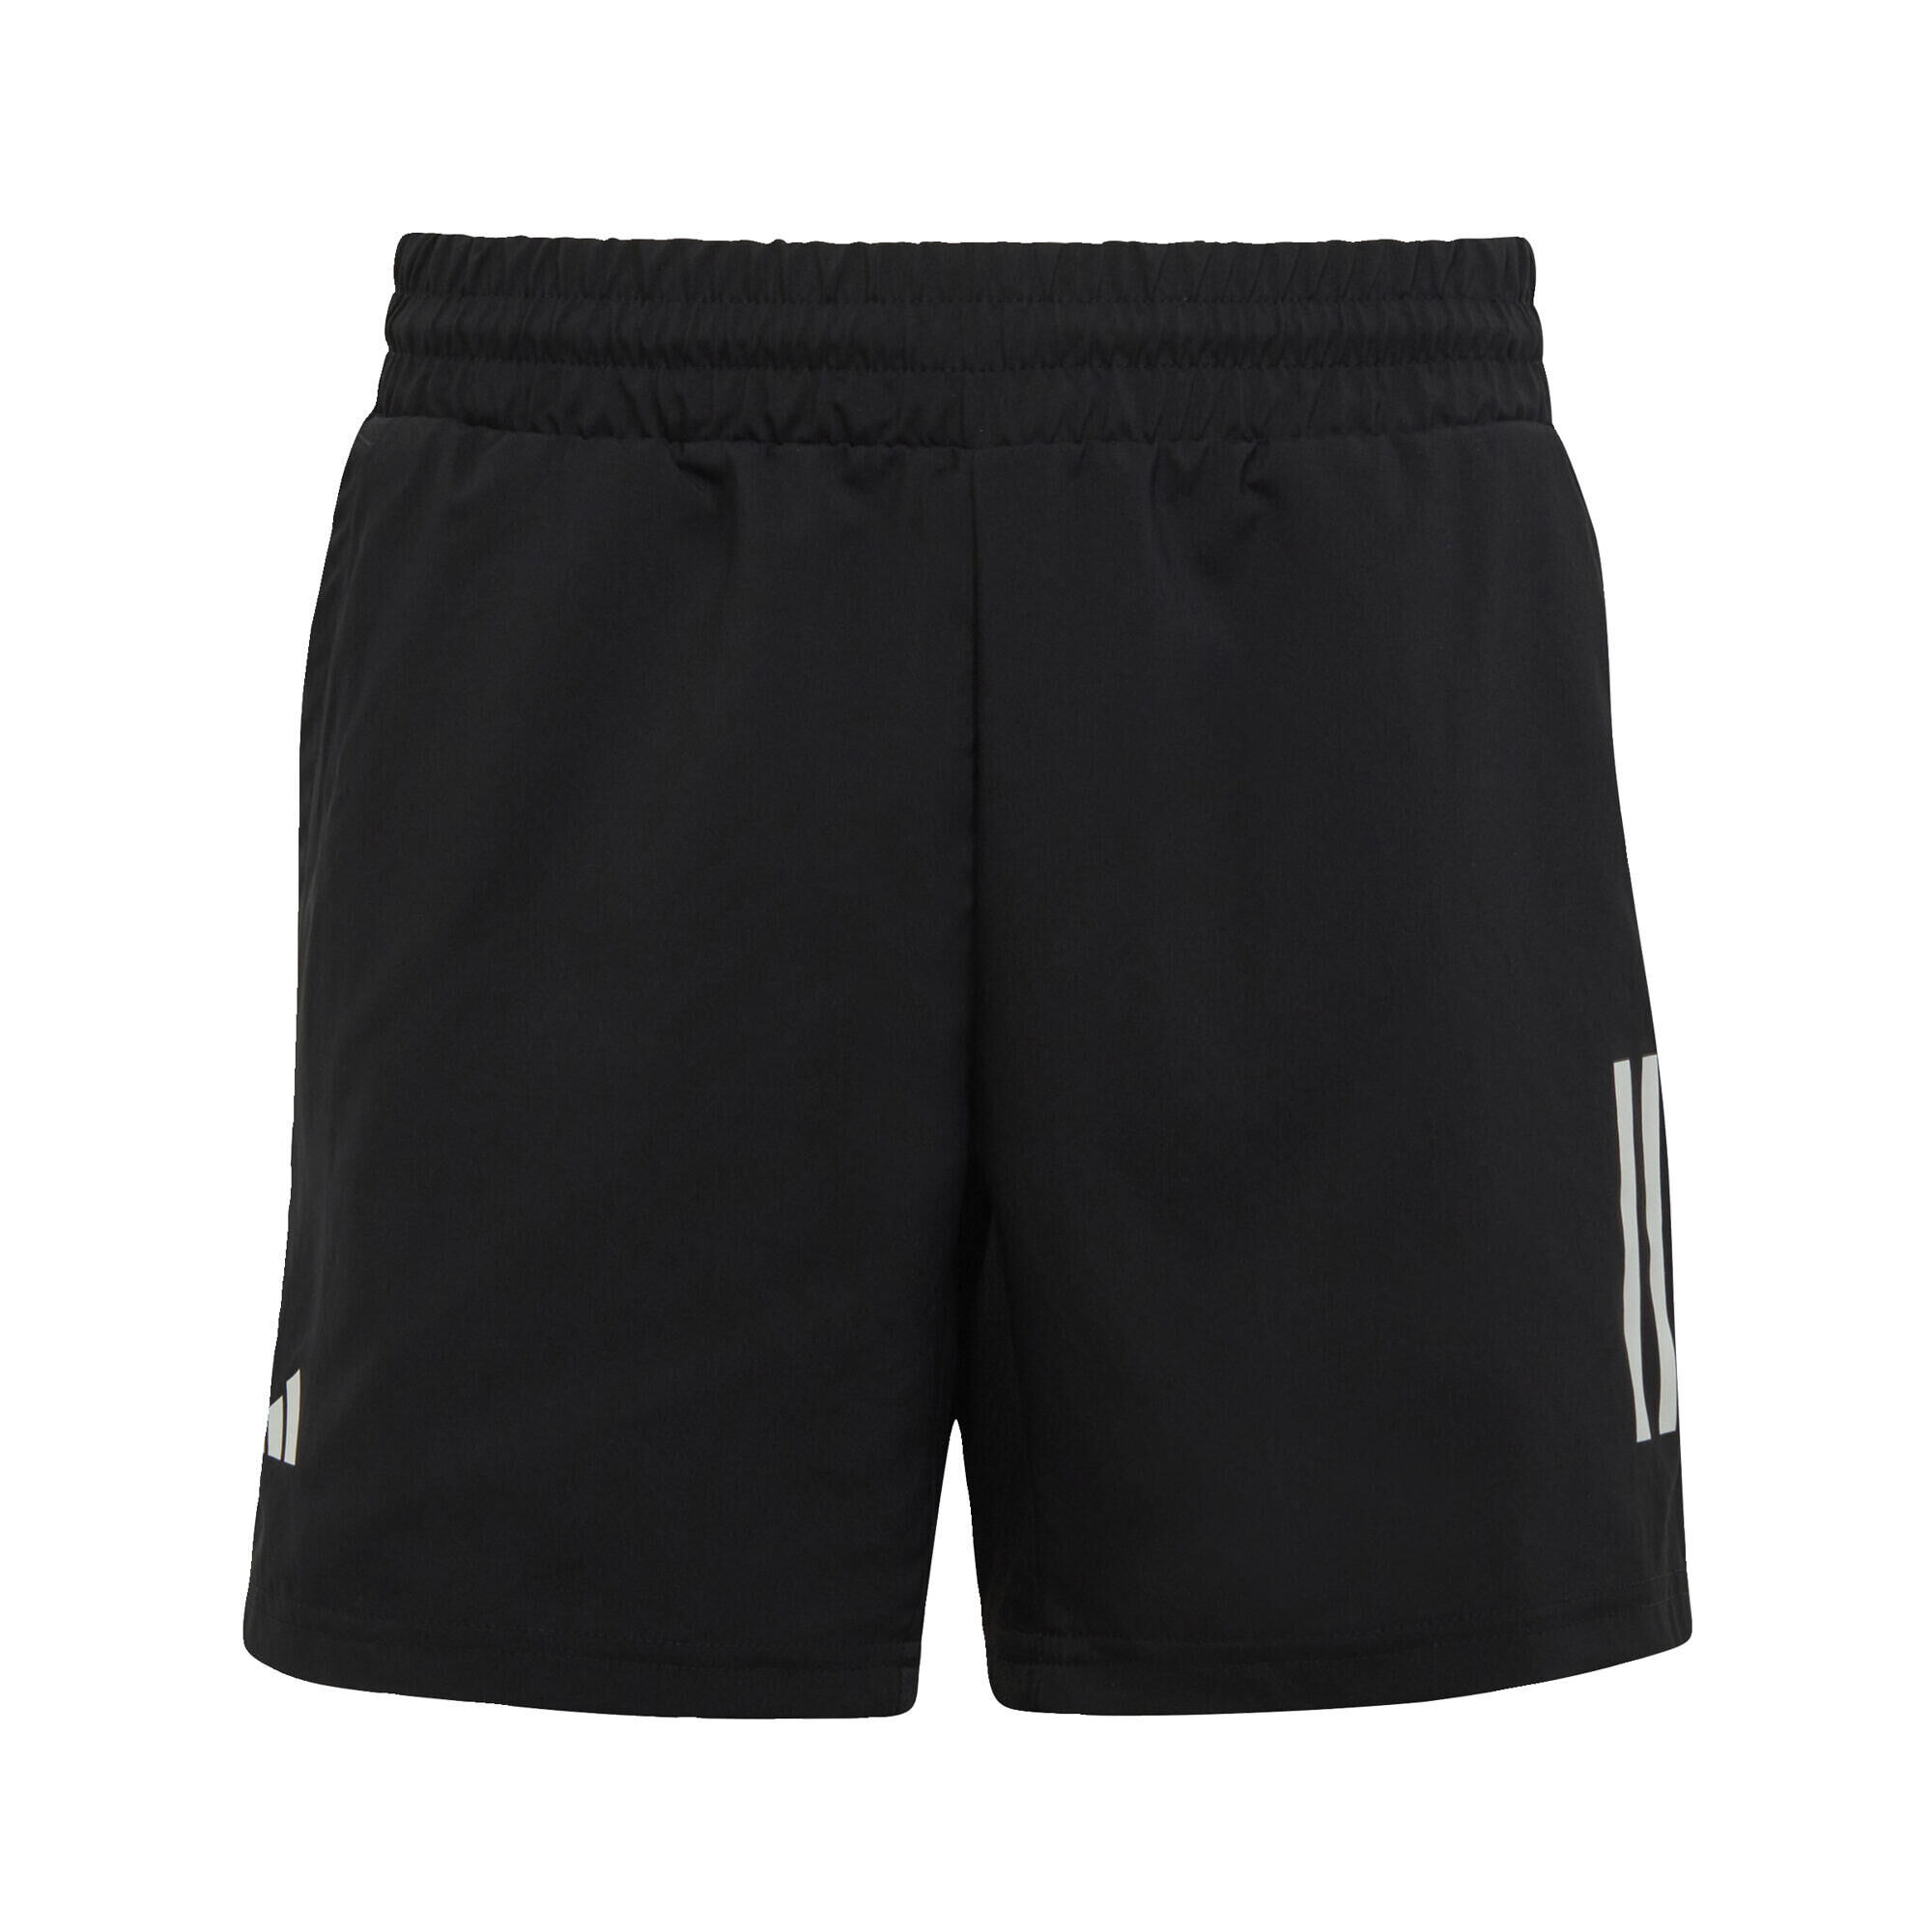 ADIDAS Club Tennis 3-Stripes Shorts